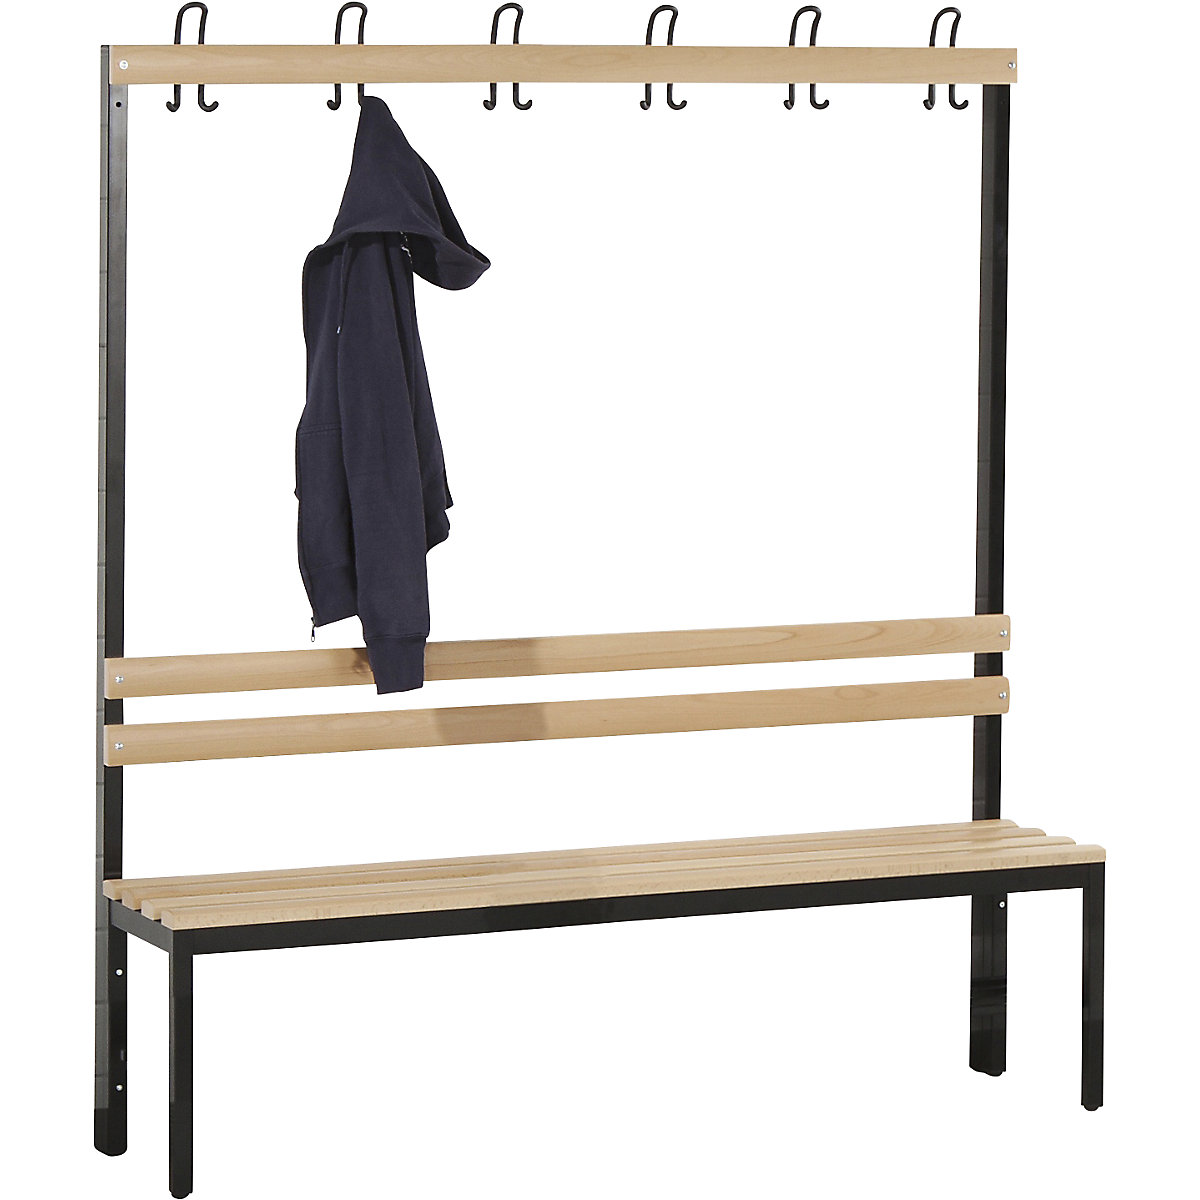 Wolf – Cloakroom bench, single sided, beechwood slat, 1500 mm, 6 double hooks